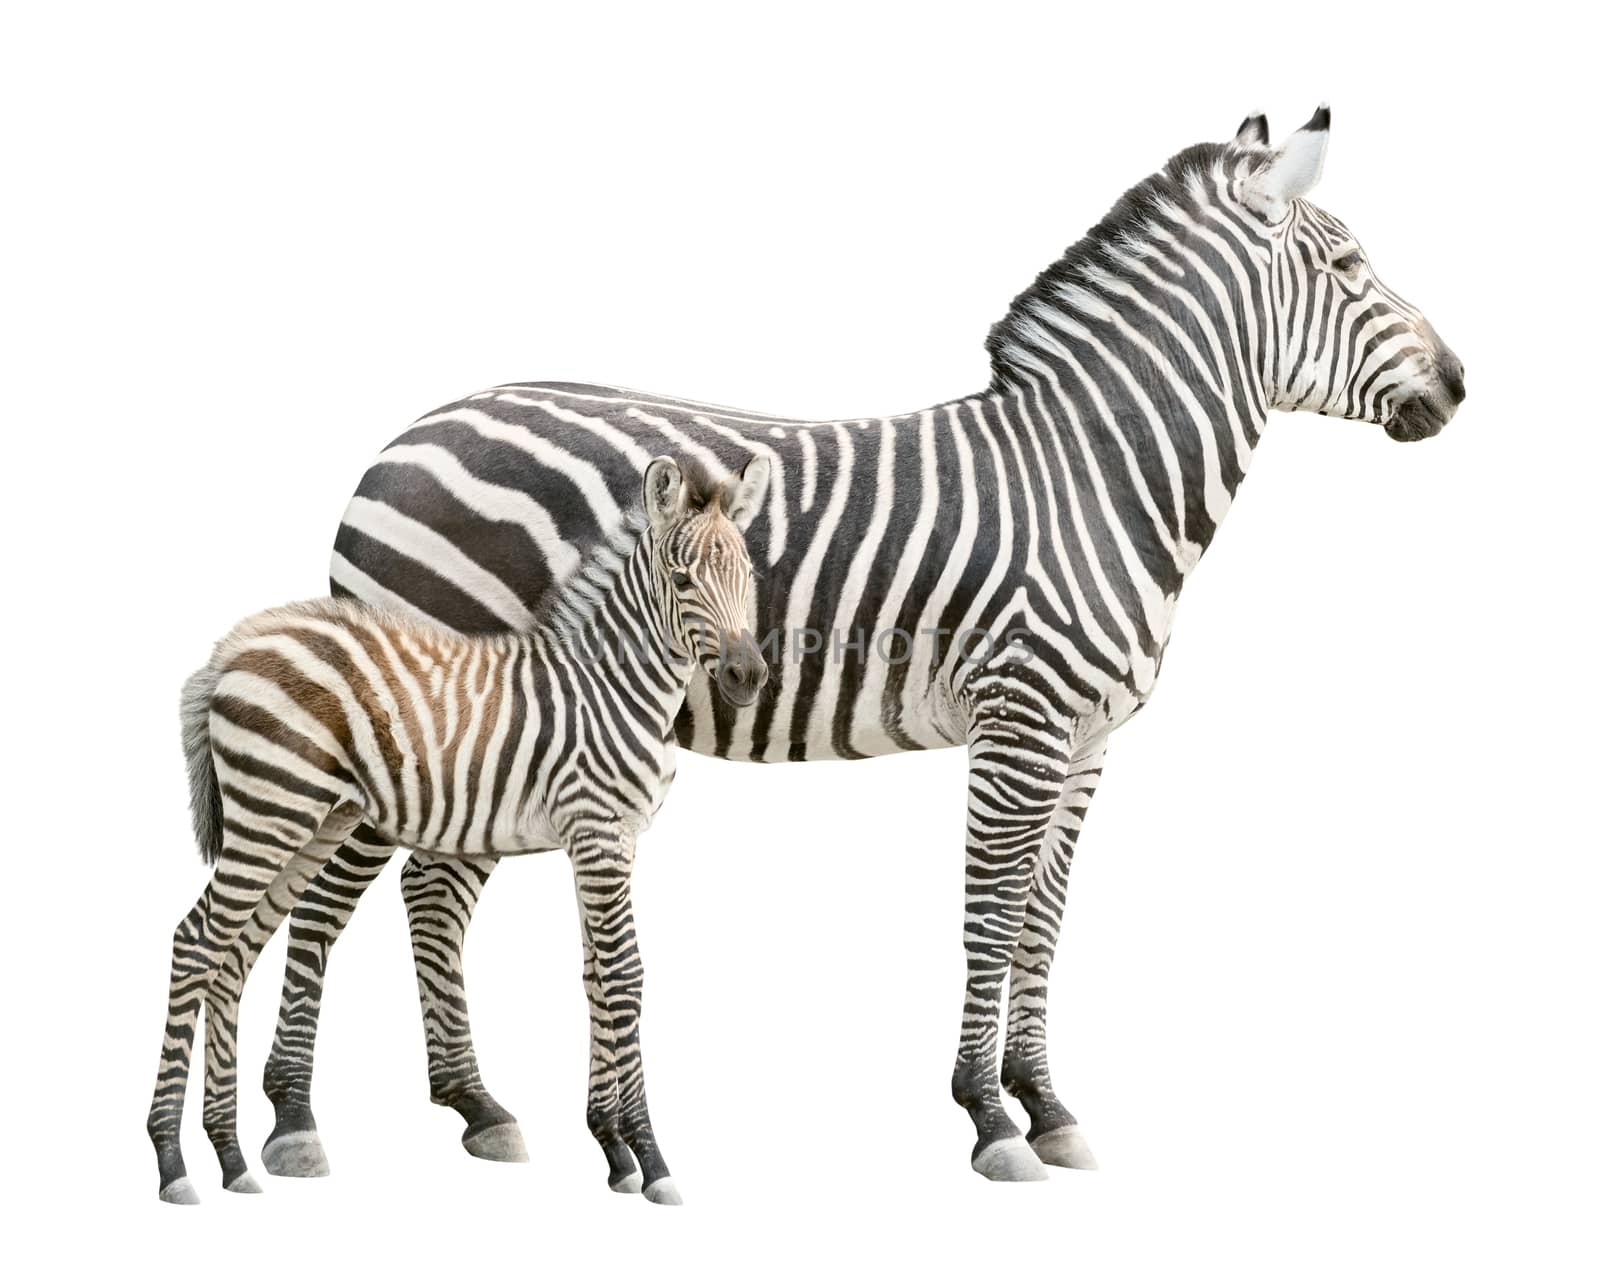 Zebra with foal cutout by vkstudio